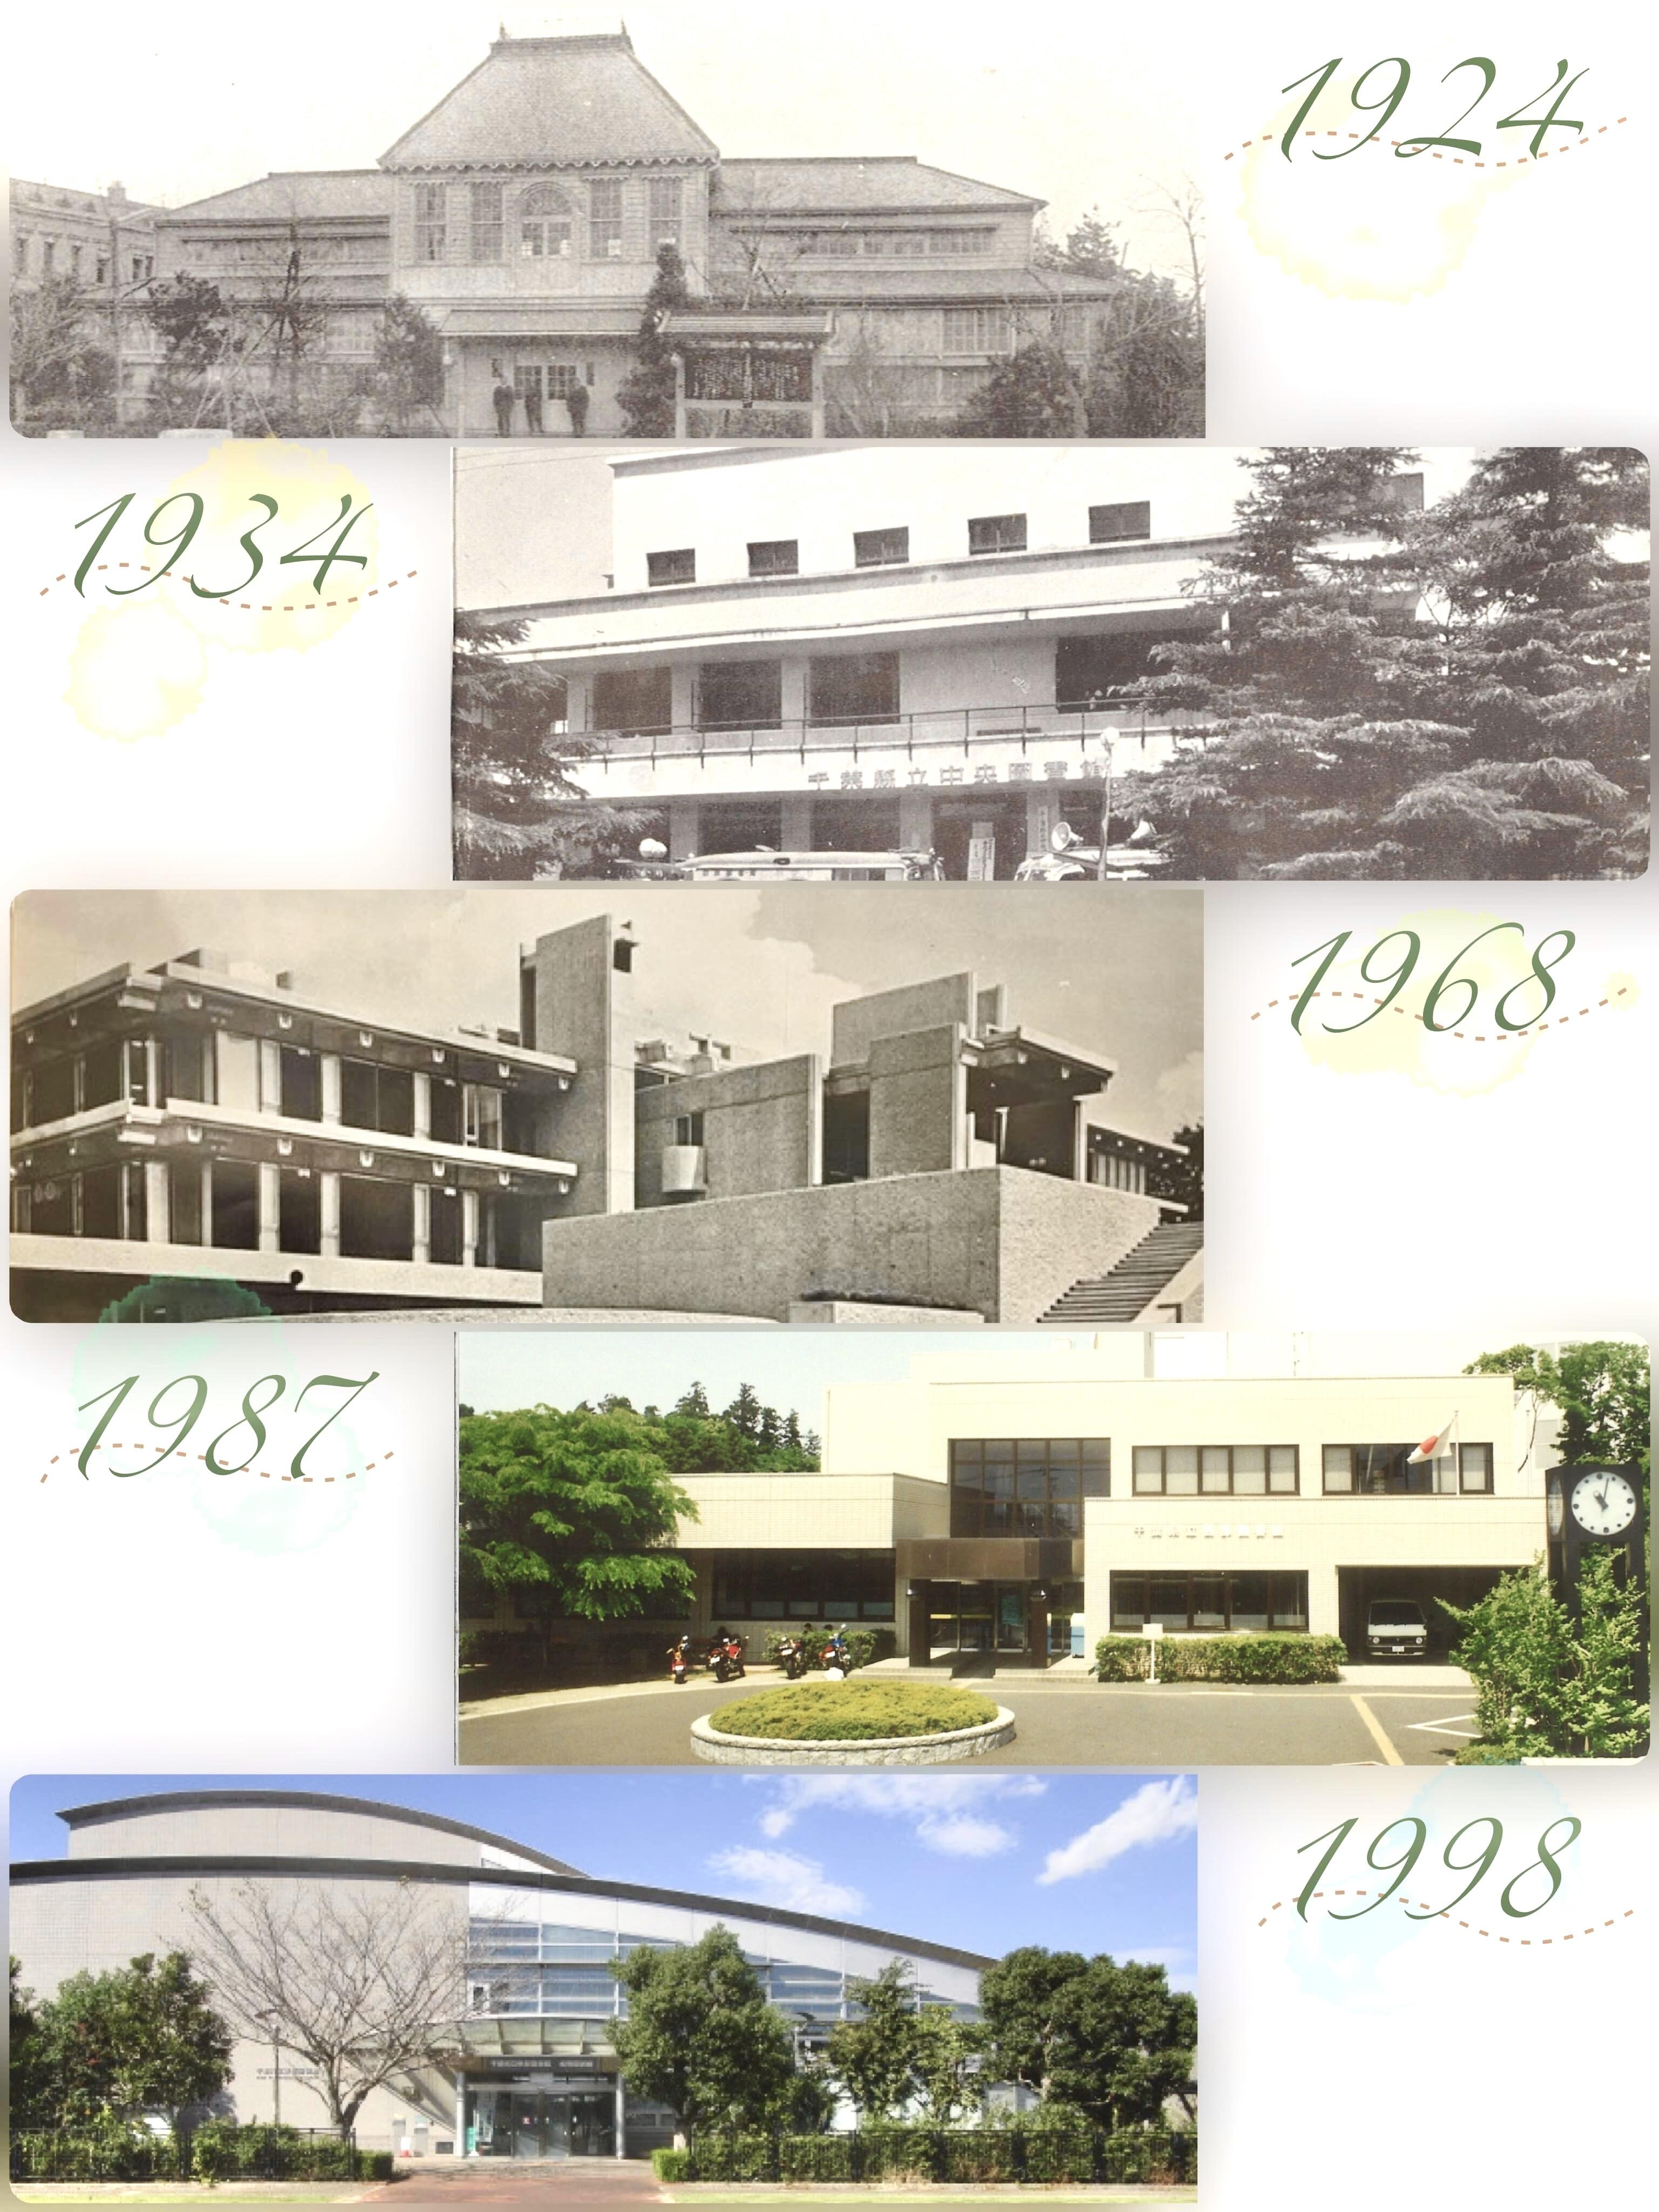 ５枚の写真が並んでいます。1924年に開館した千葉県図書館の写真、1934年に開館した千葉県図書館の写真　1968年に開館した千葉県立図書館の写真　1987年に開館した西部図書館の写真　1998に開館した千葉県立東部図書館の写真